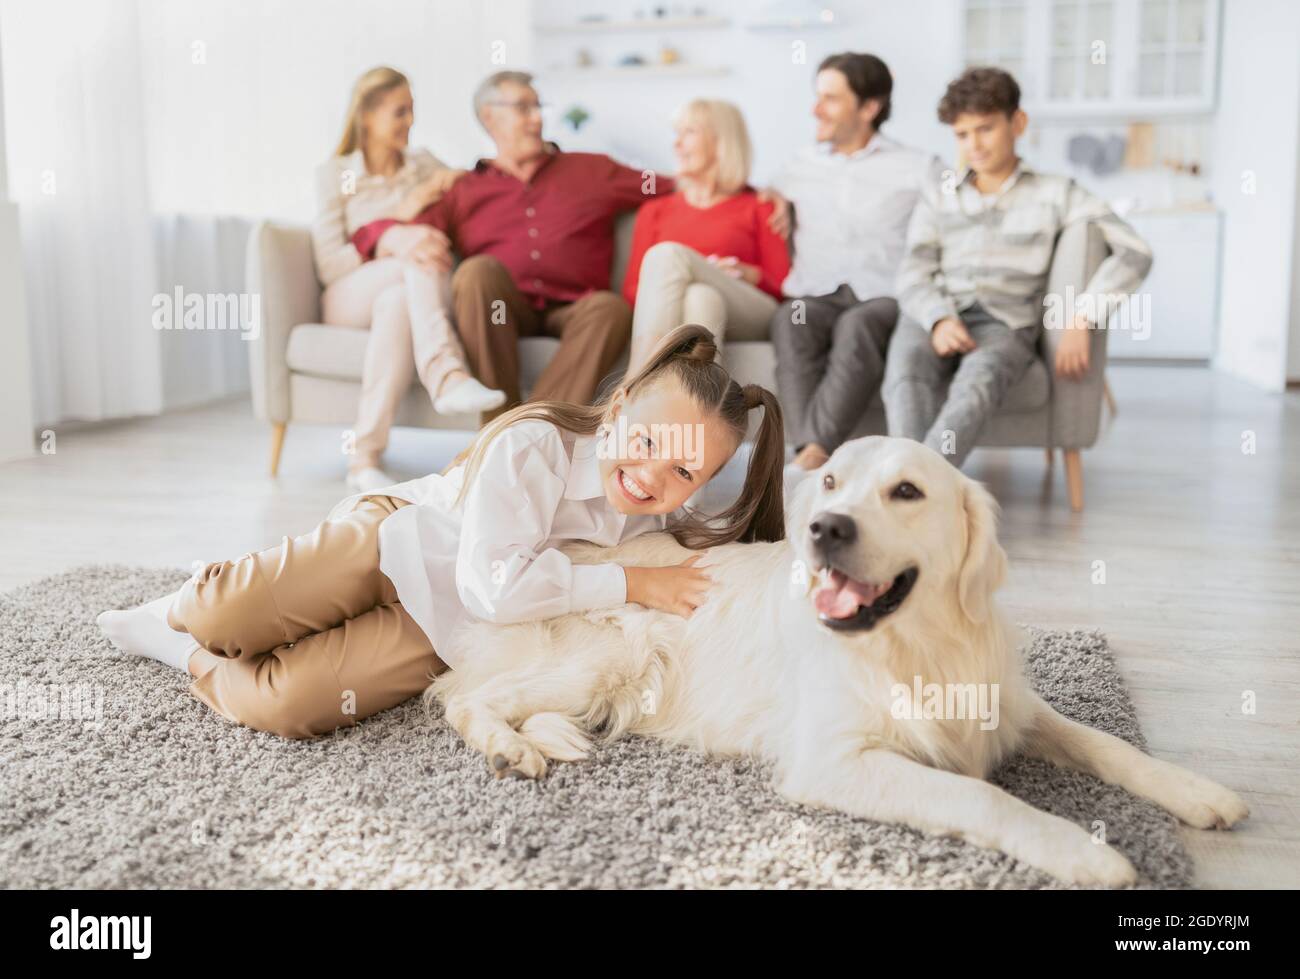 Glückliches Mädchen mit niedlichem Hund, der auf dem Boden liegt, und ihrer Familie mit mehreren Generationen, die auf der Couch im Wohnzimmer miteinander kommunizierte Stockfoto